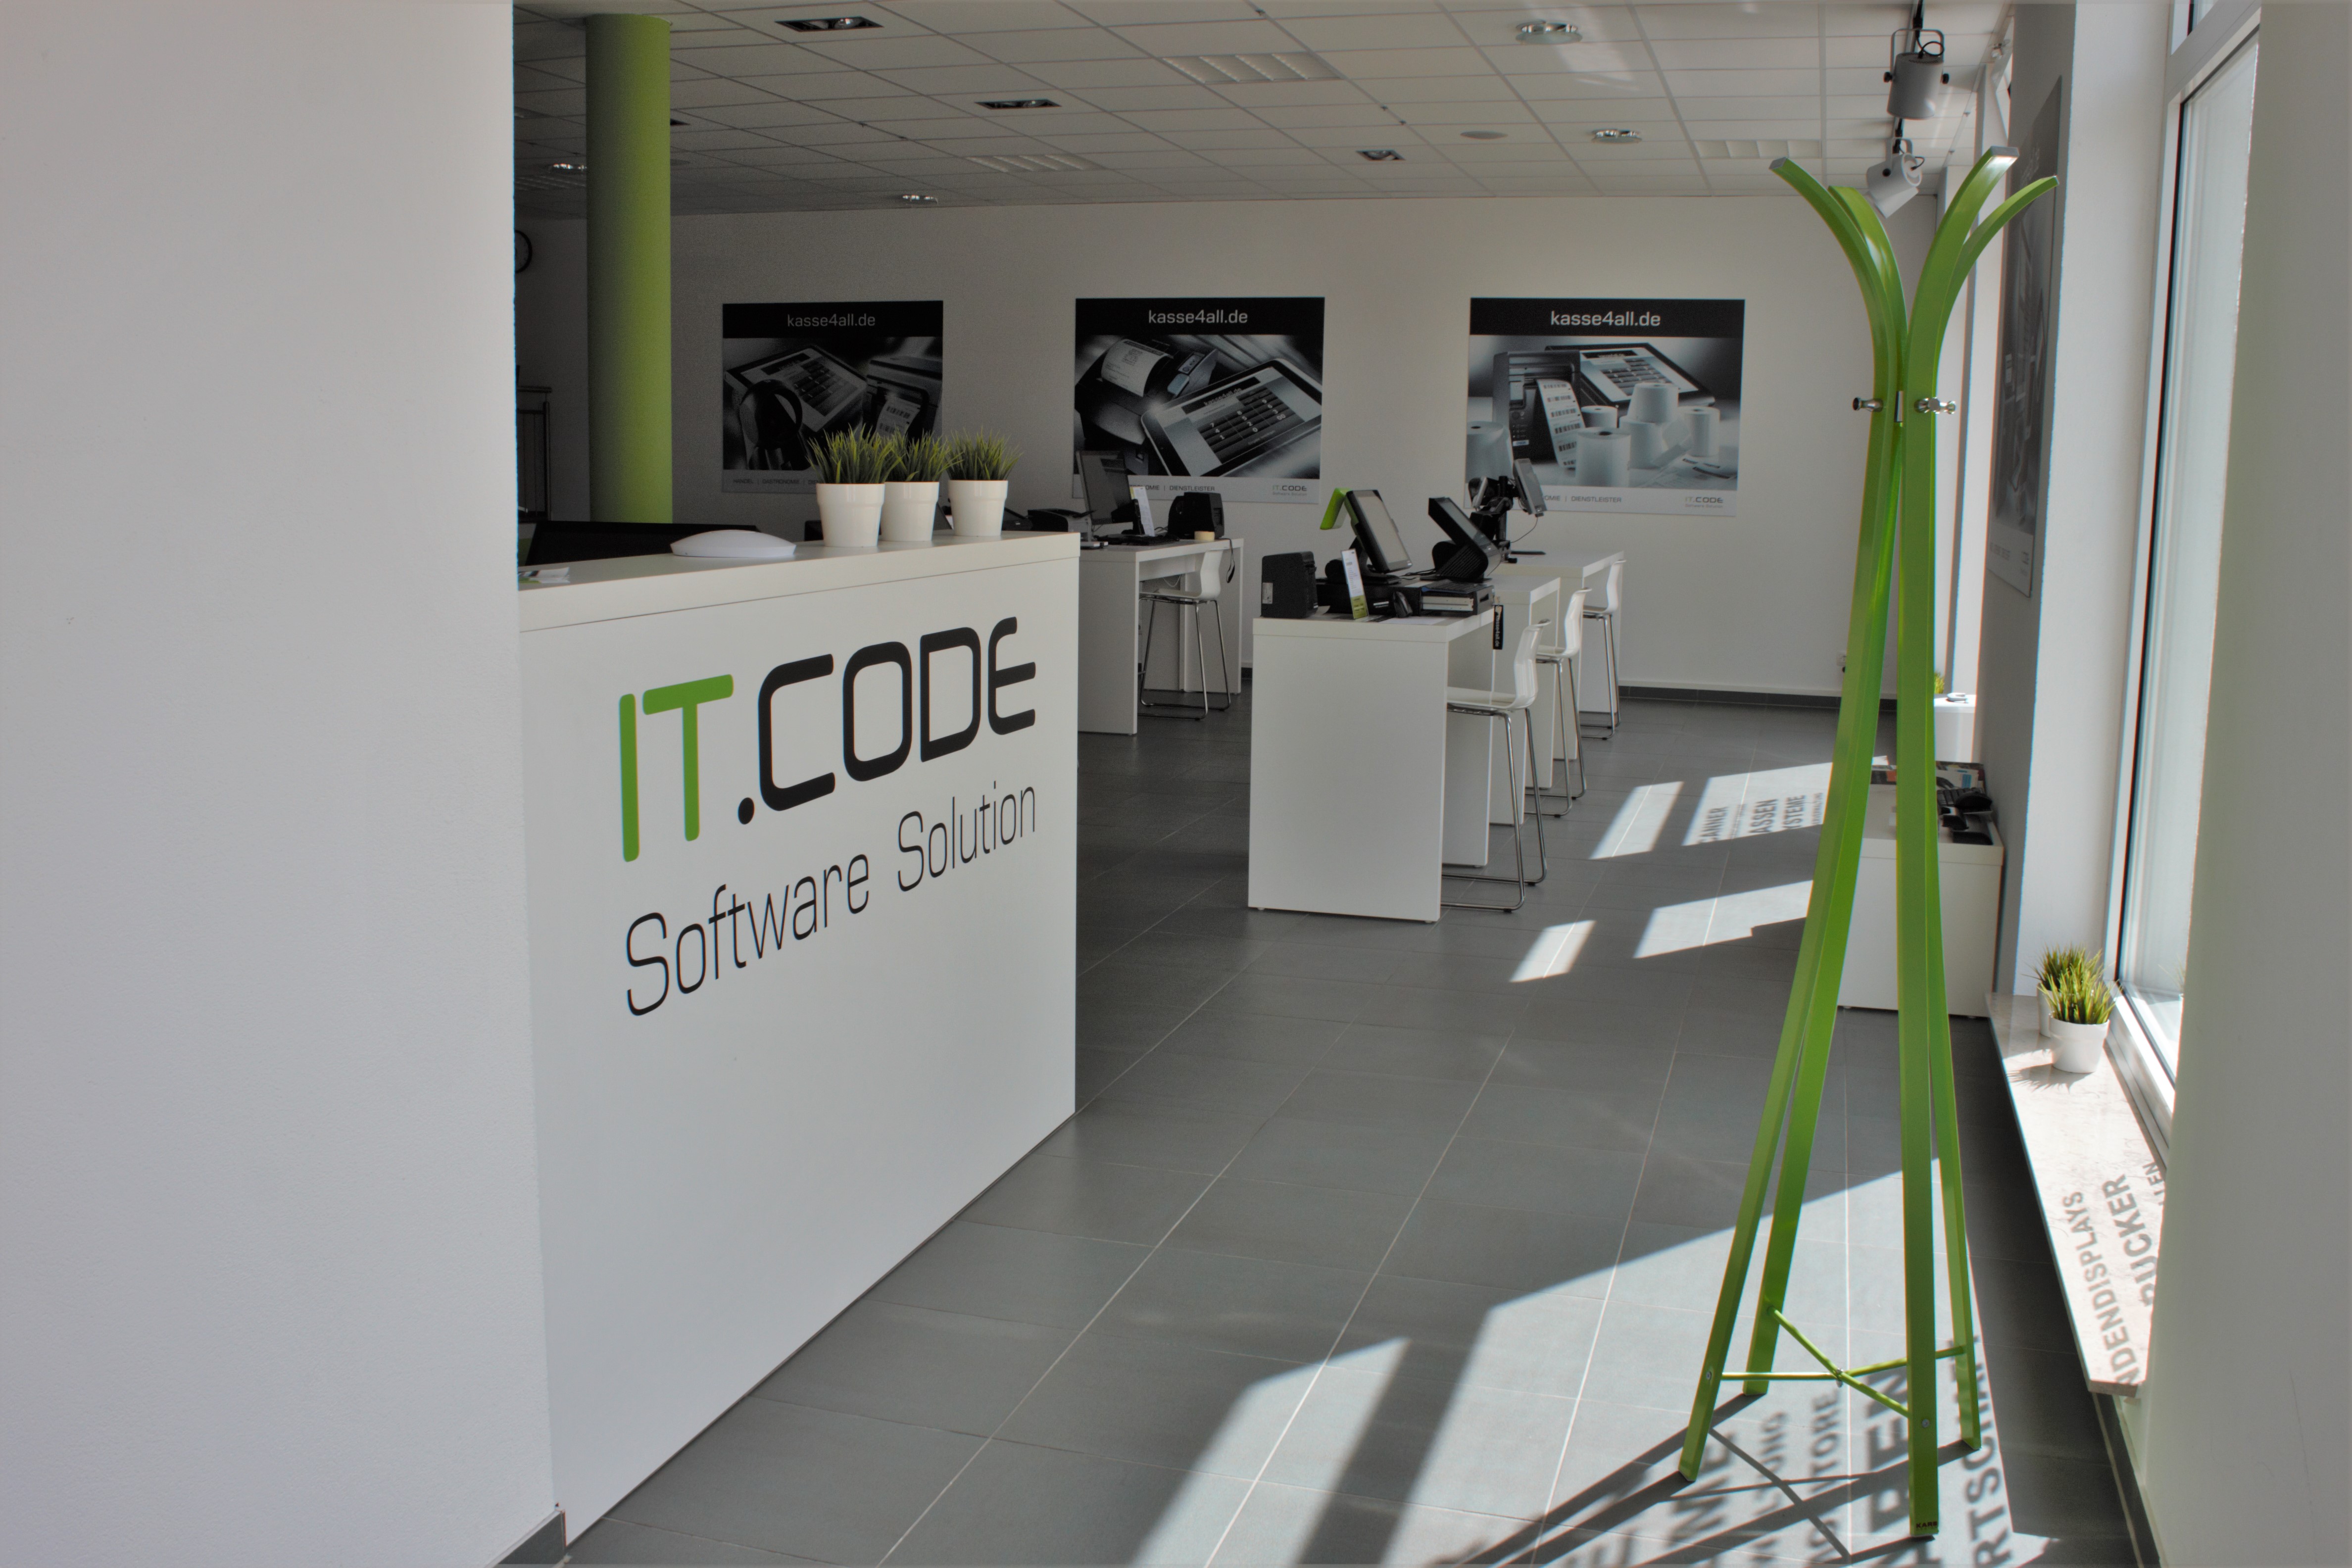 Bild 1 IT.CODE GmbH Software Solution in Stuttgart